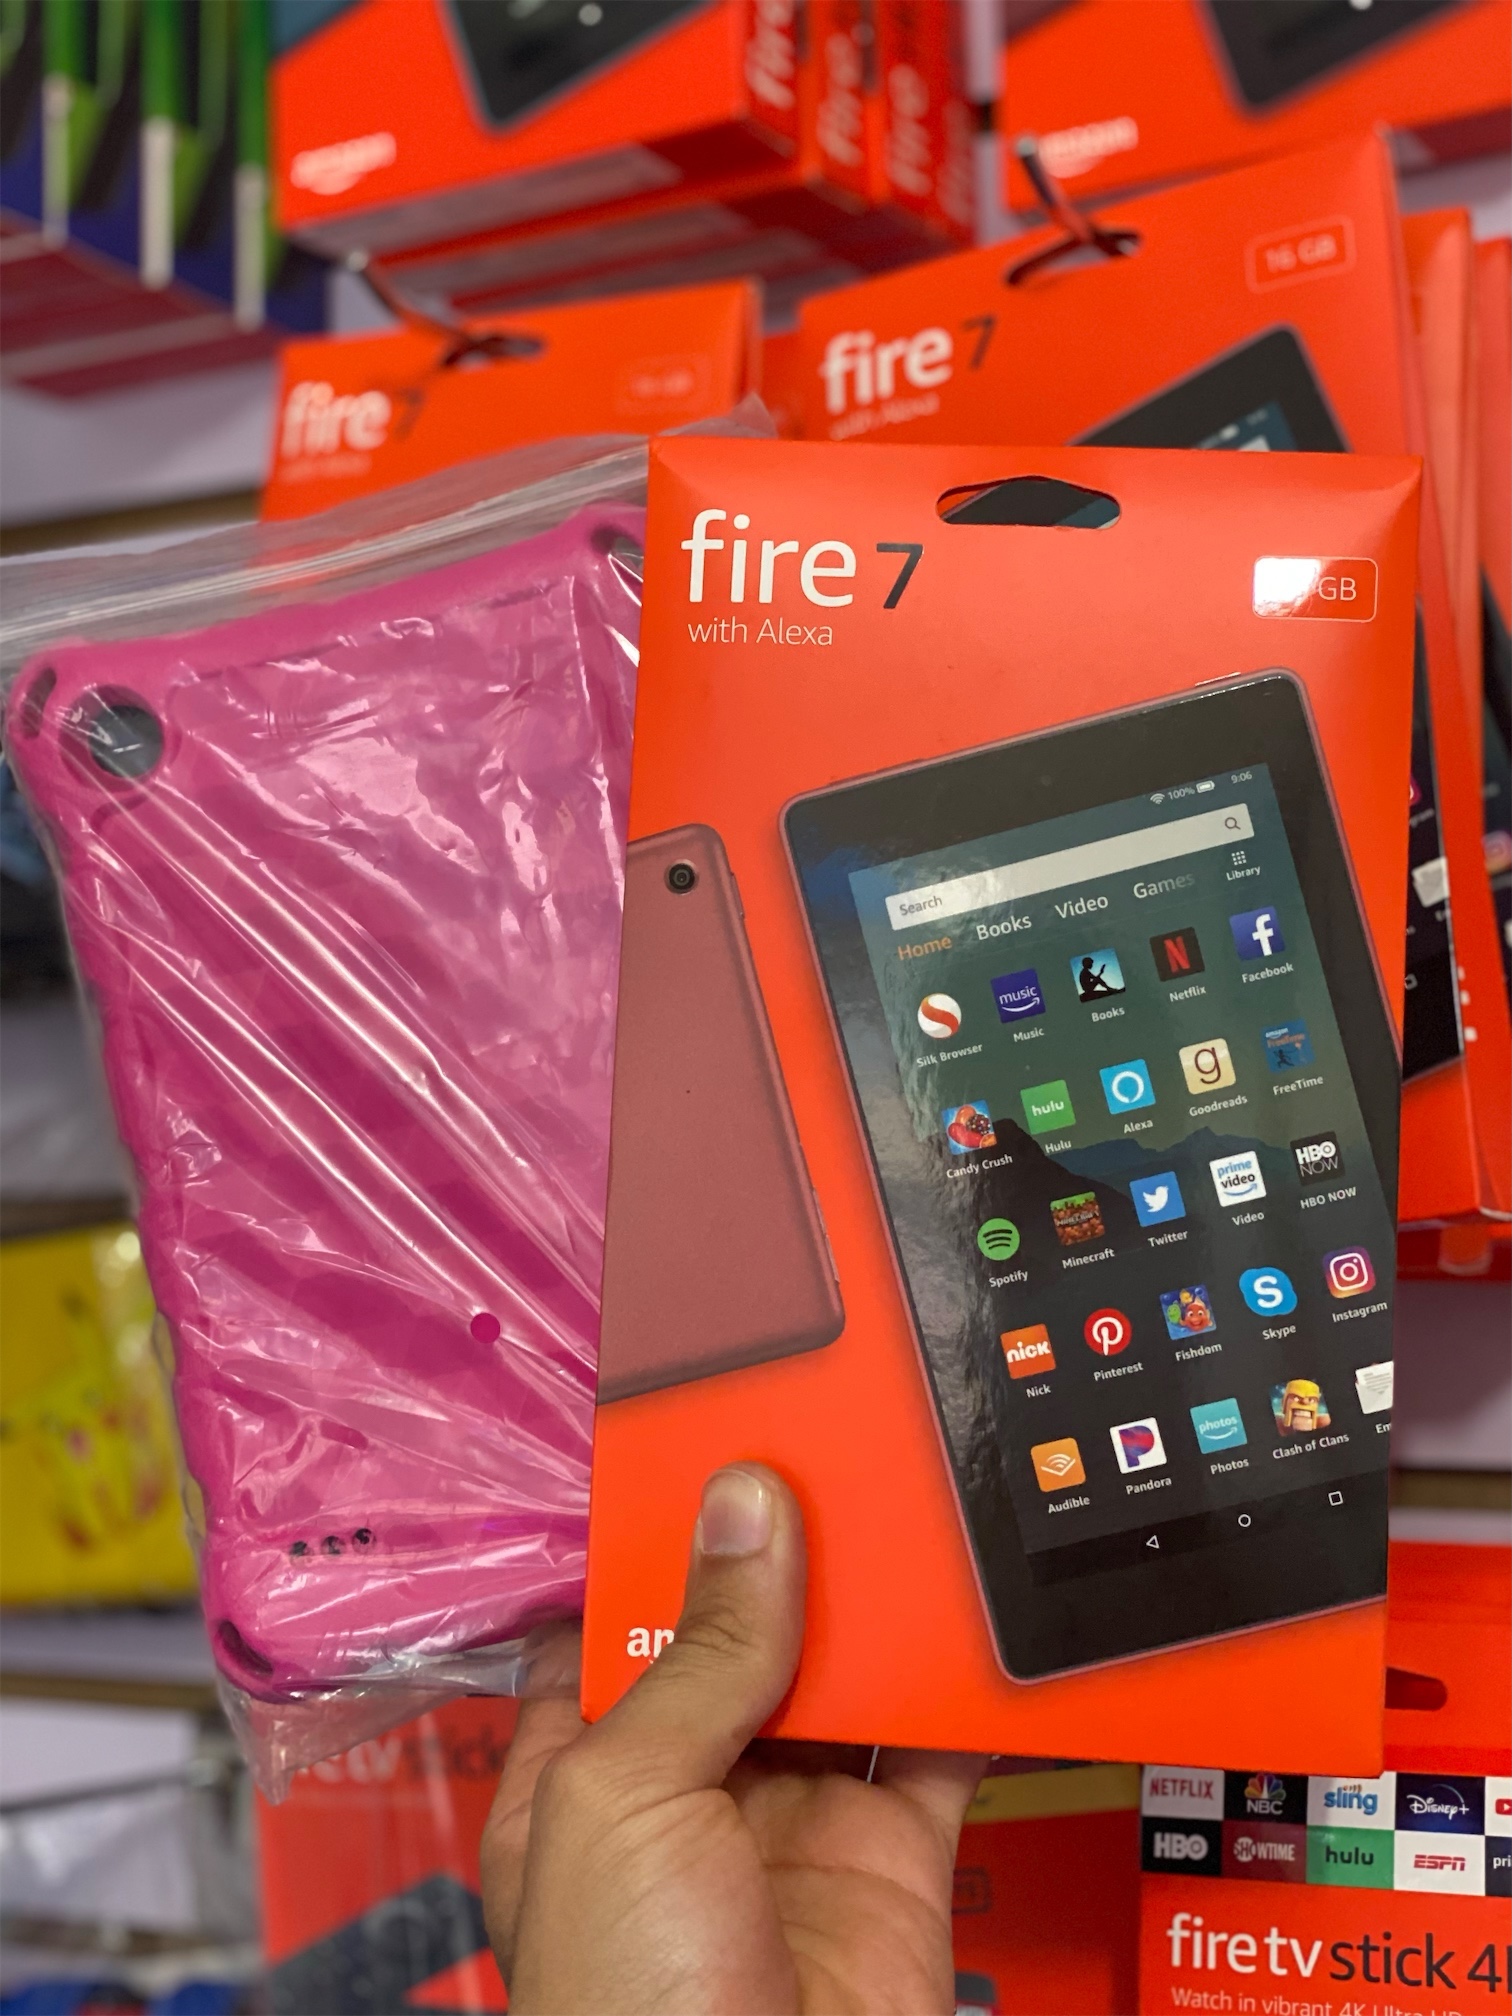 celulares y tabletas - Tablet Amazon fire 7 16GB + Cover